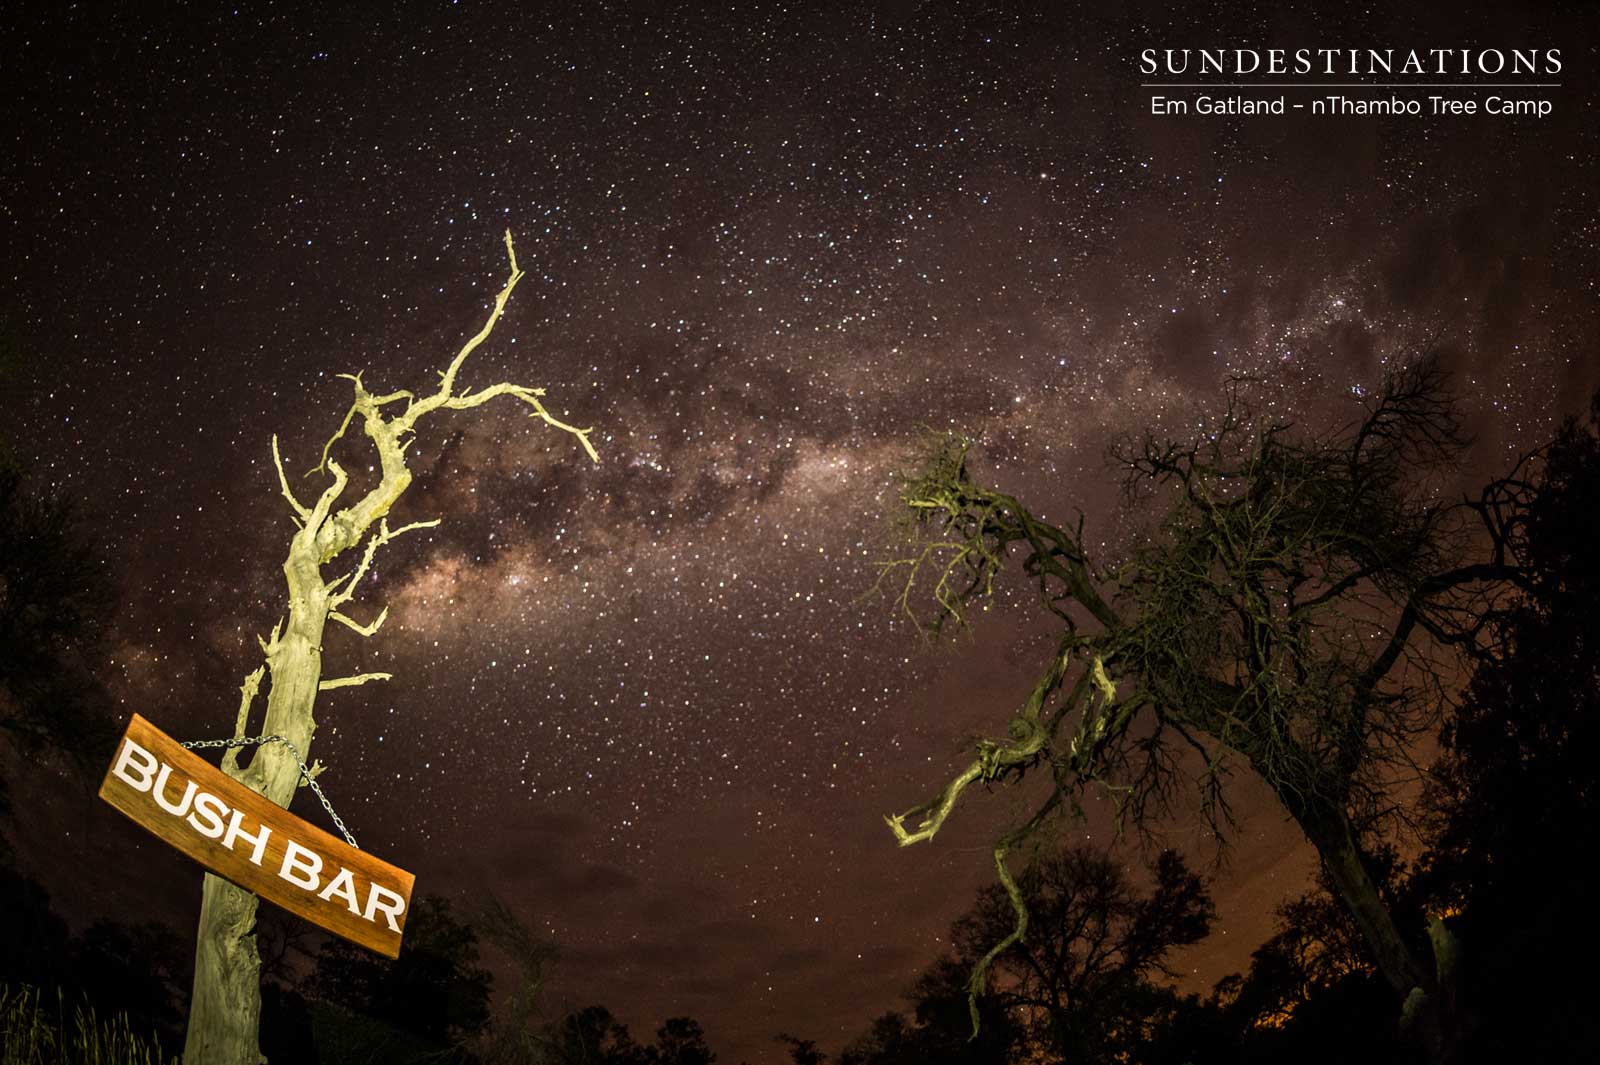 Bush Bar Night Sky